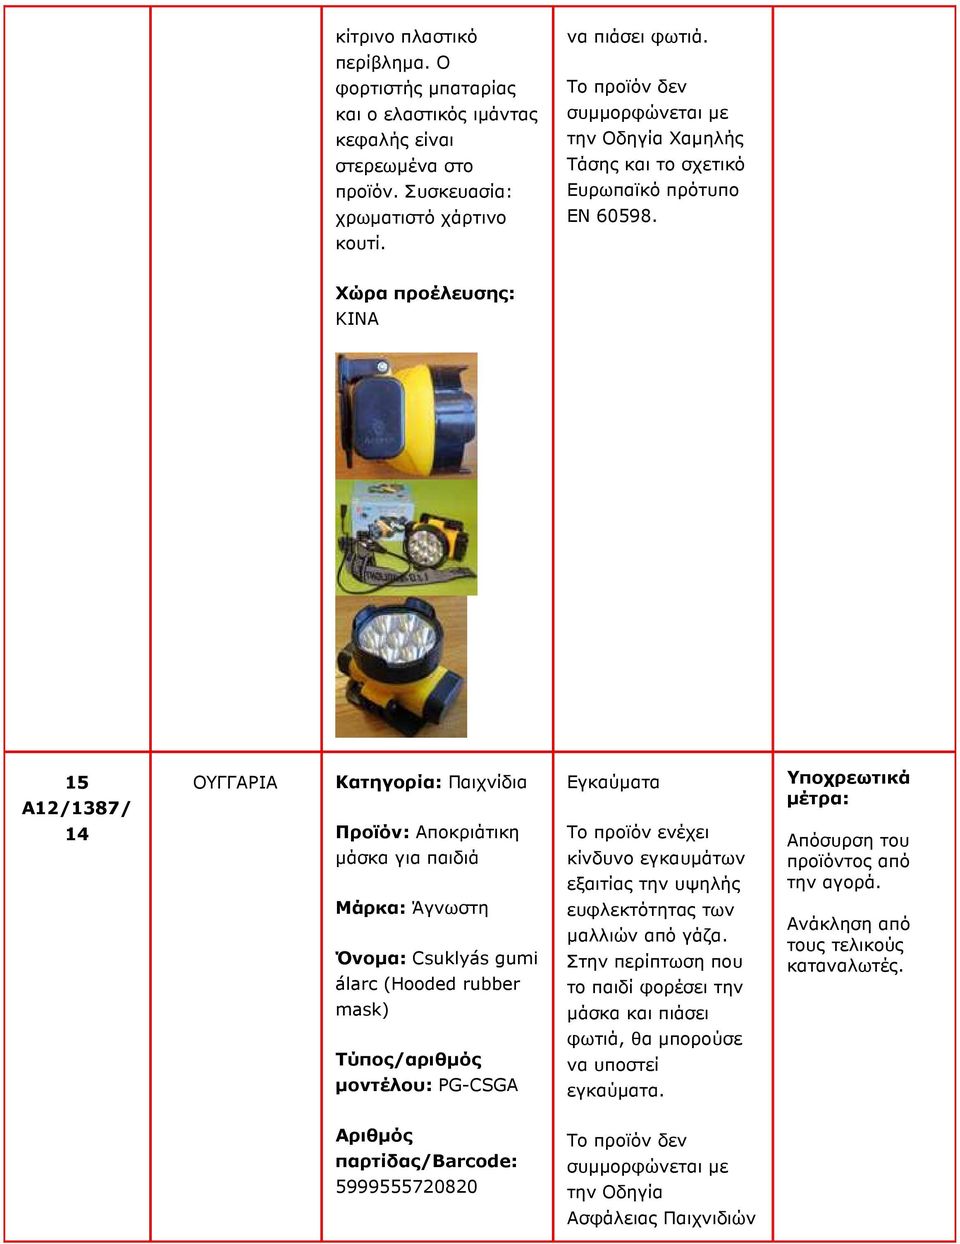 15 A12/1387/ ΟΥΓΓΑΡΙΑ Κατηγορία: Παιχνίδια Προϊόν: Αποκριάτικη µάσκα για παιδιά Μάρκα: Άγνωστη Όνοµα: Csuklyás gumi álarc (Hooded rubber mask) Εγκαύµατα Το προϊόν ενέχει κίνδυνο